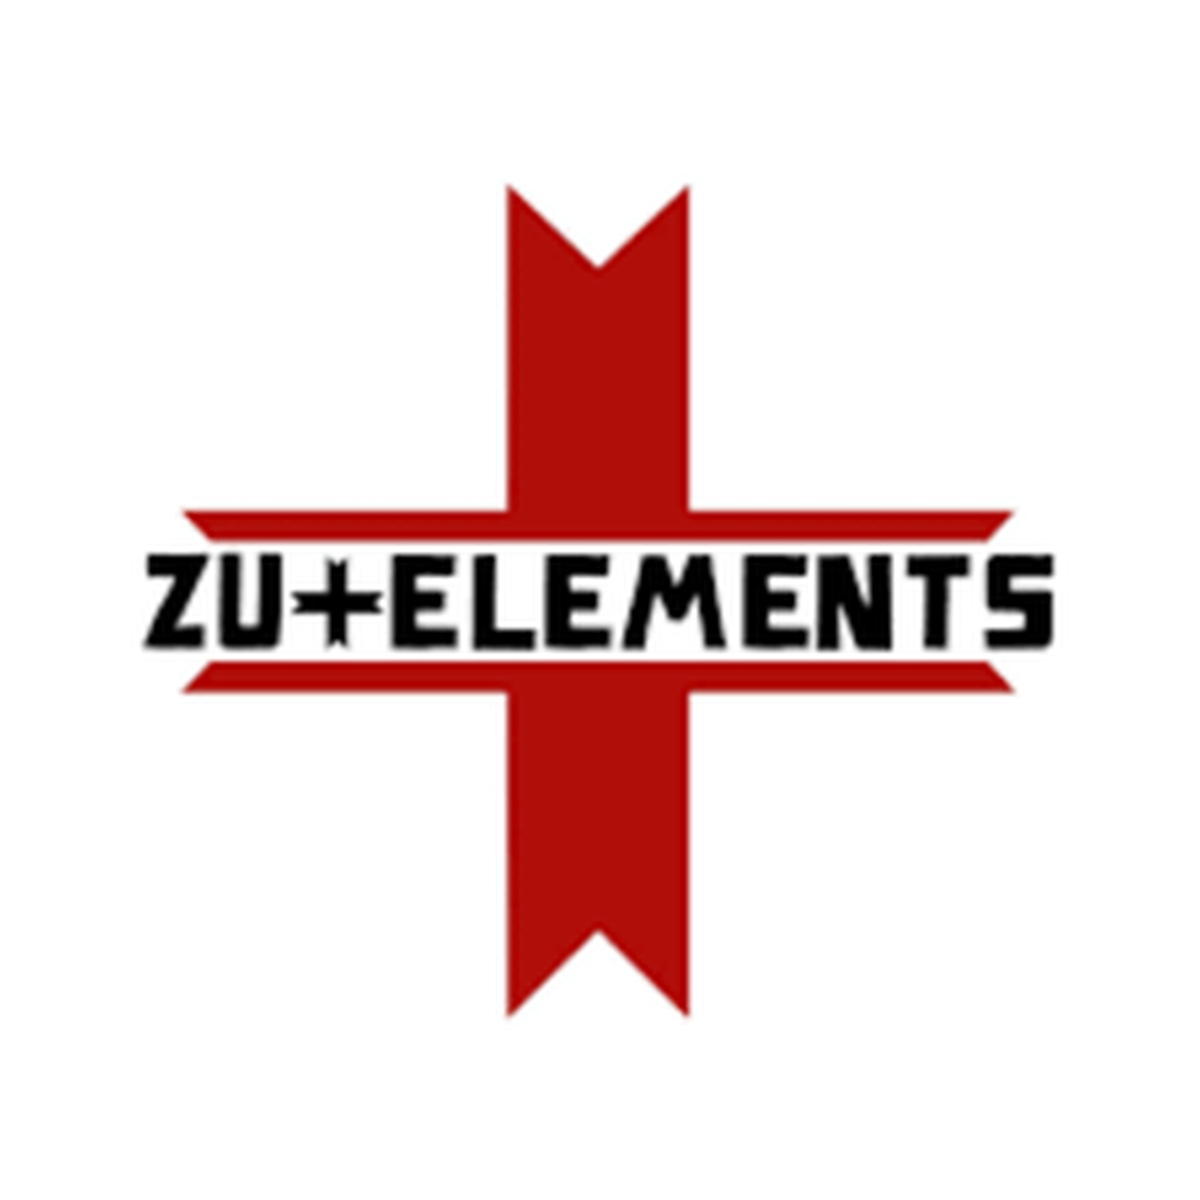 Zu elements